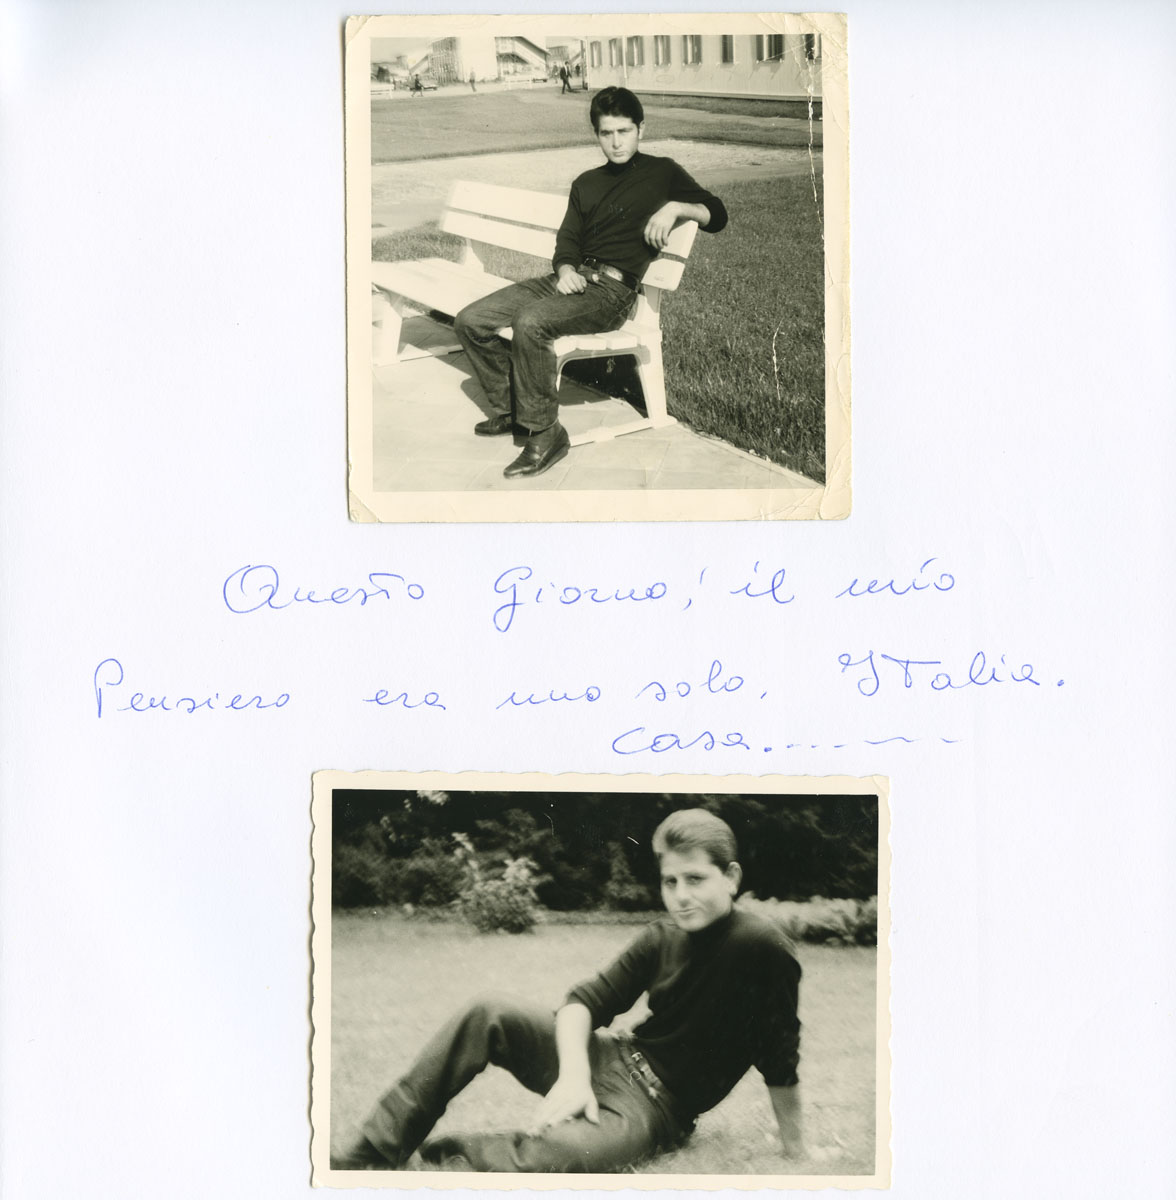 Seite aus Fotoalbum: Lino Cariugi auf einer Parkbank und im Gras sitzend